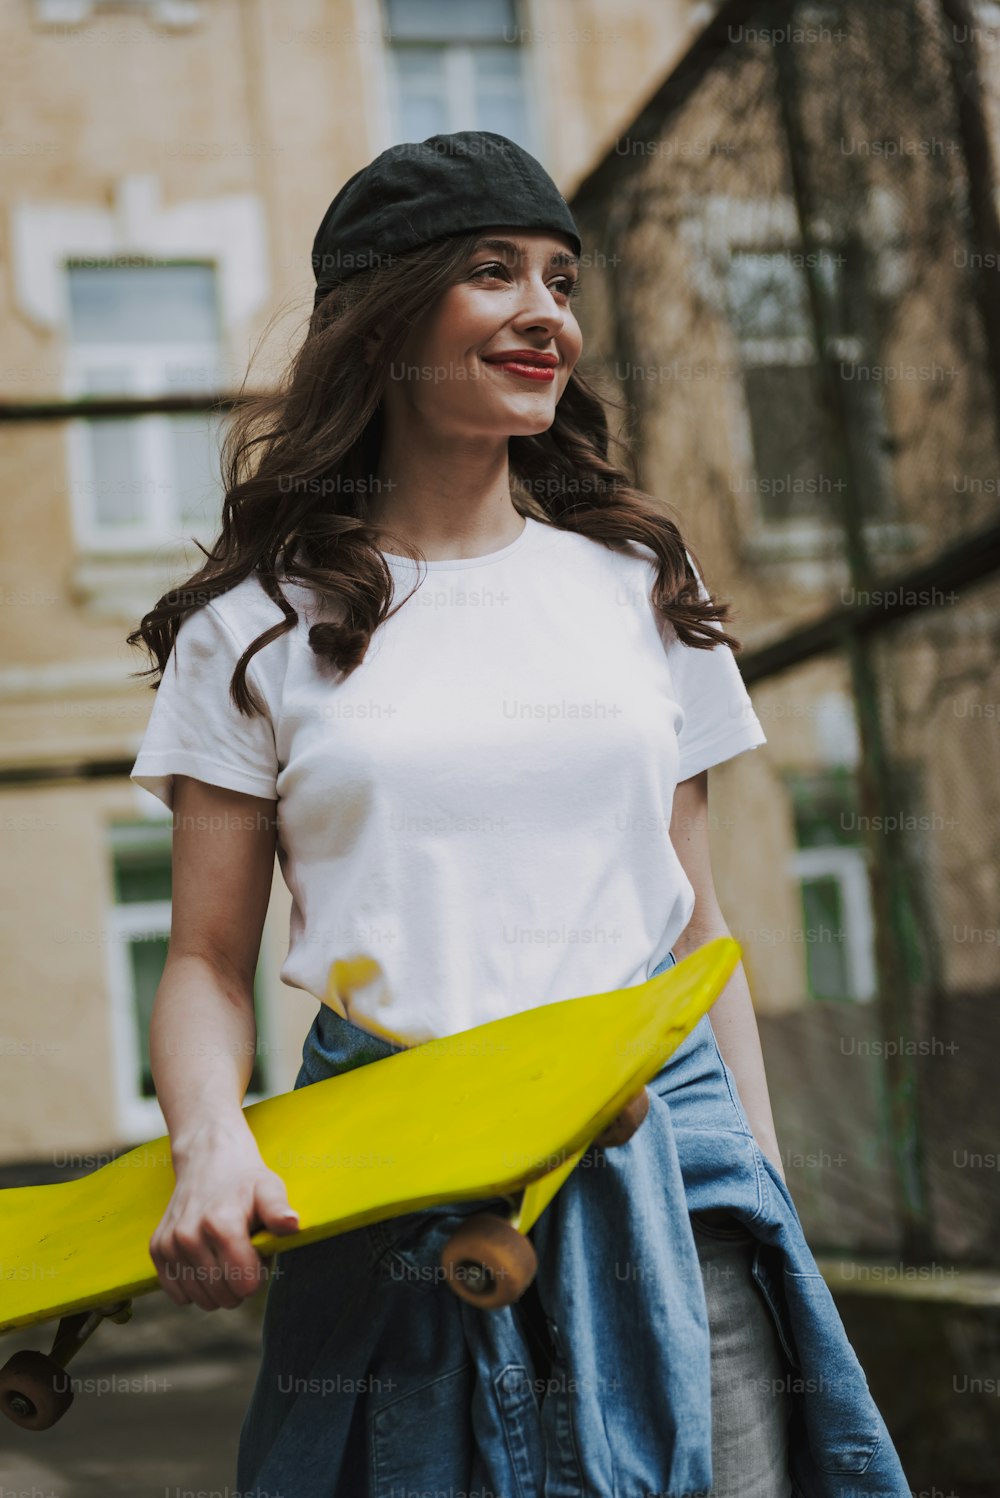 도시 생활 및 스포츠 활동. 노란 스케이트보드를 들고 도시 배경을 걷고 있는 젊은 세련된 힙스터 행복한 아가씨의 허리 초상화